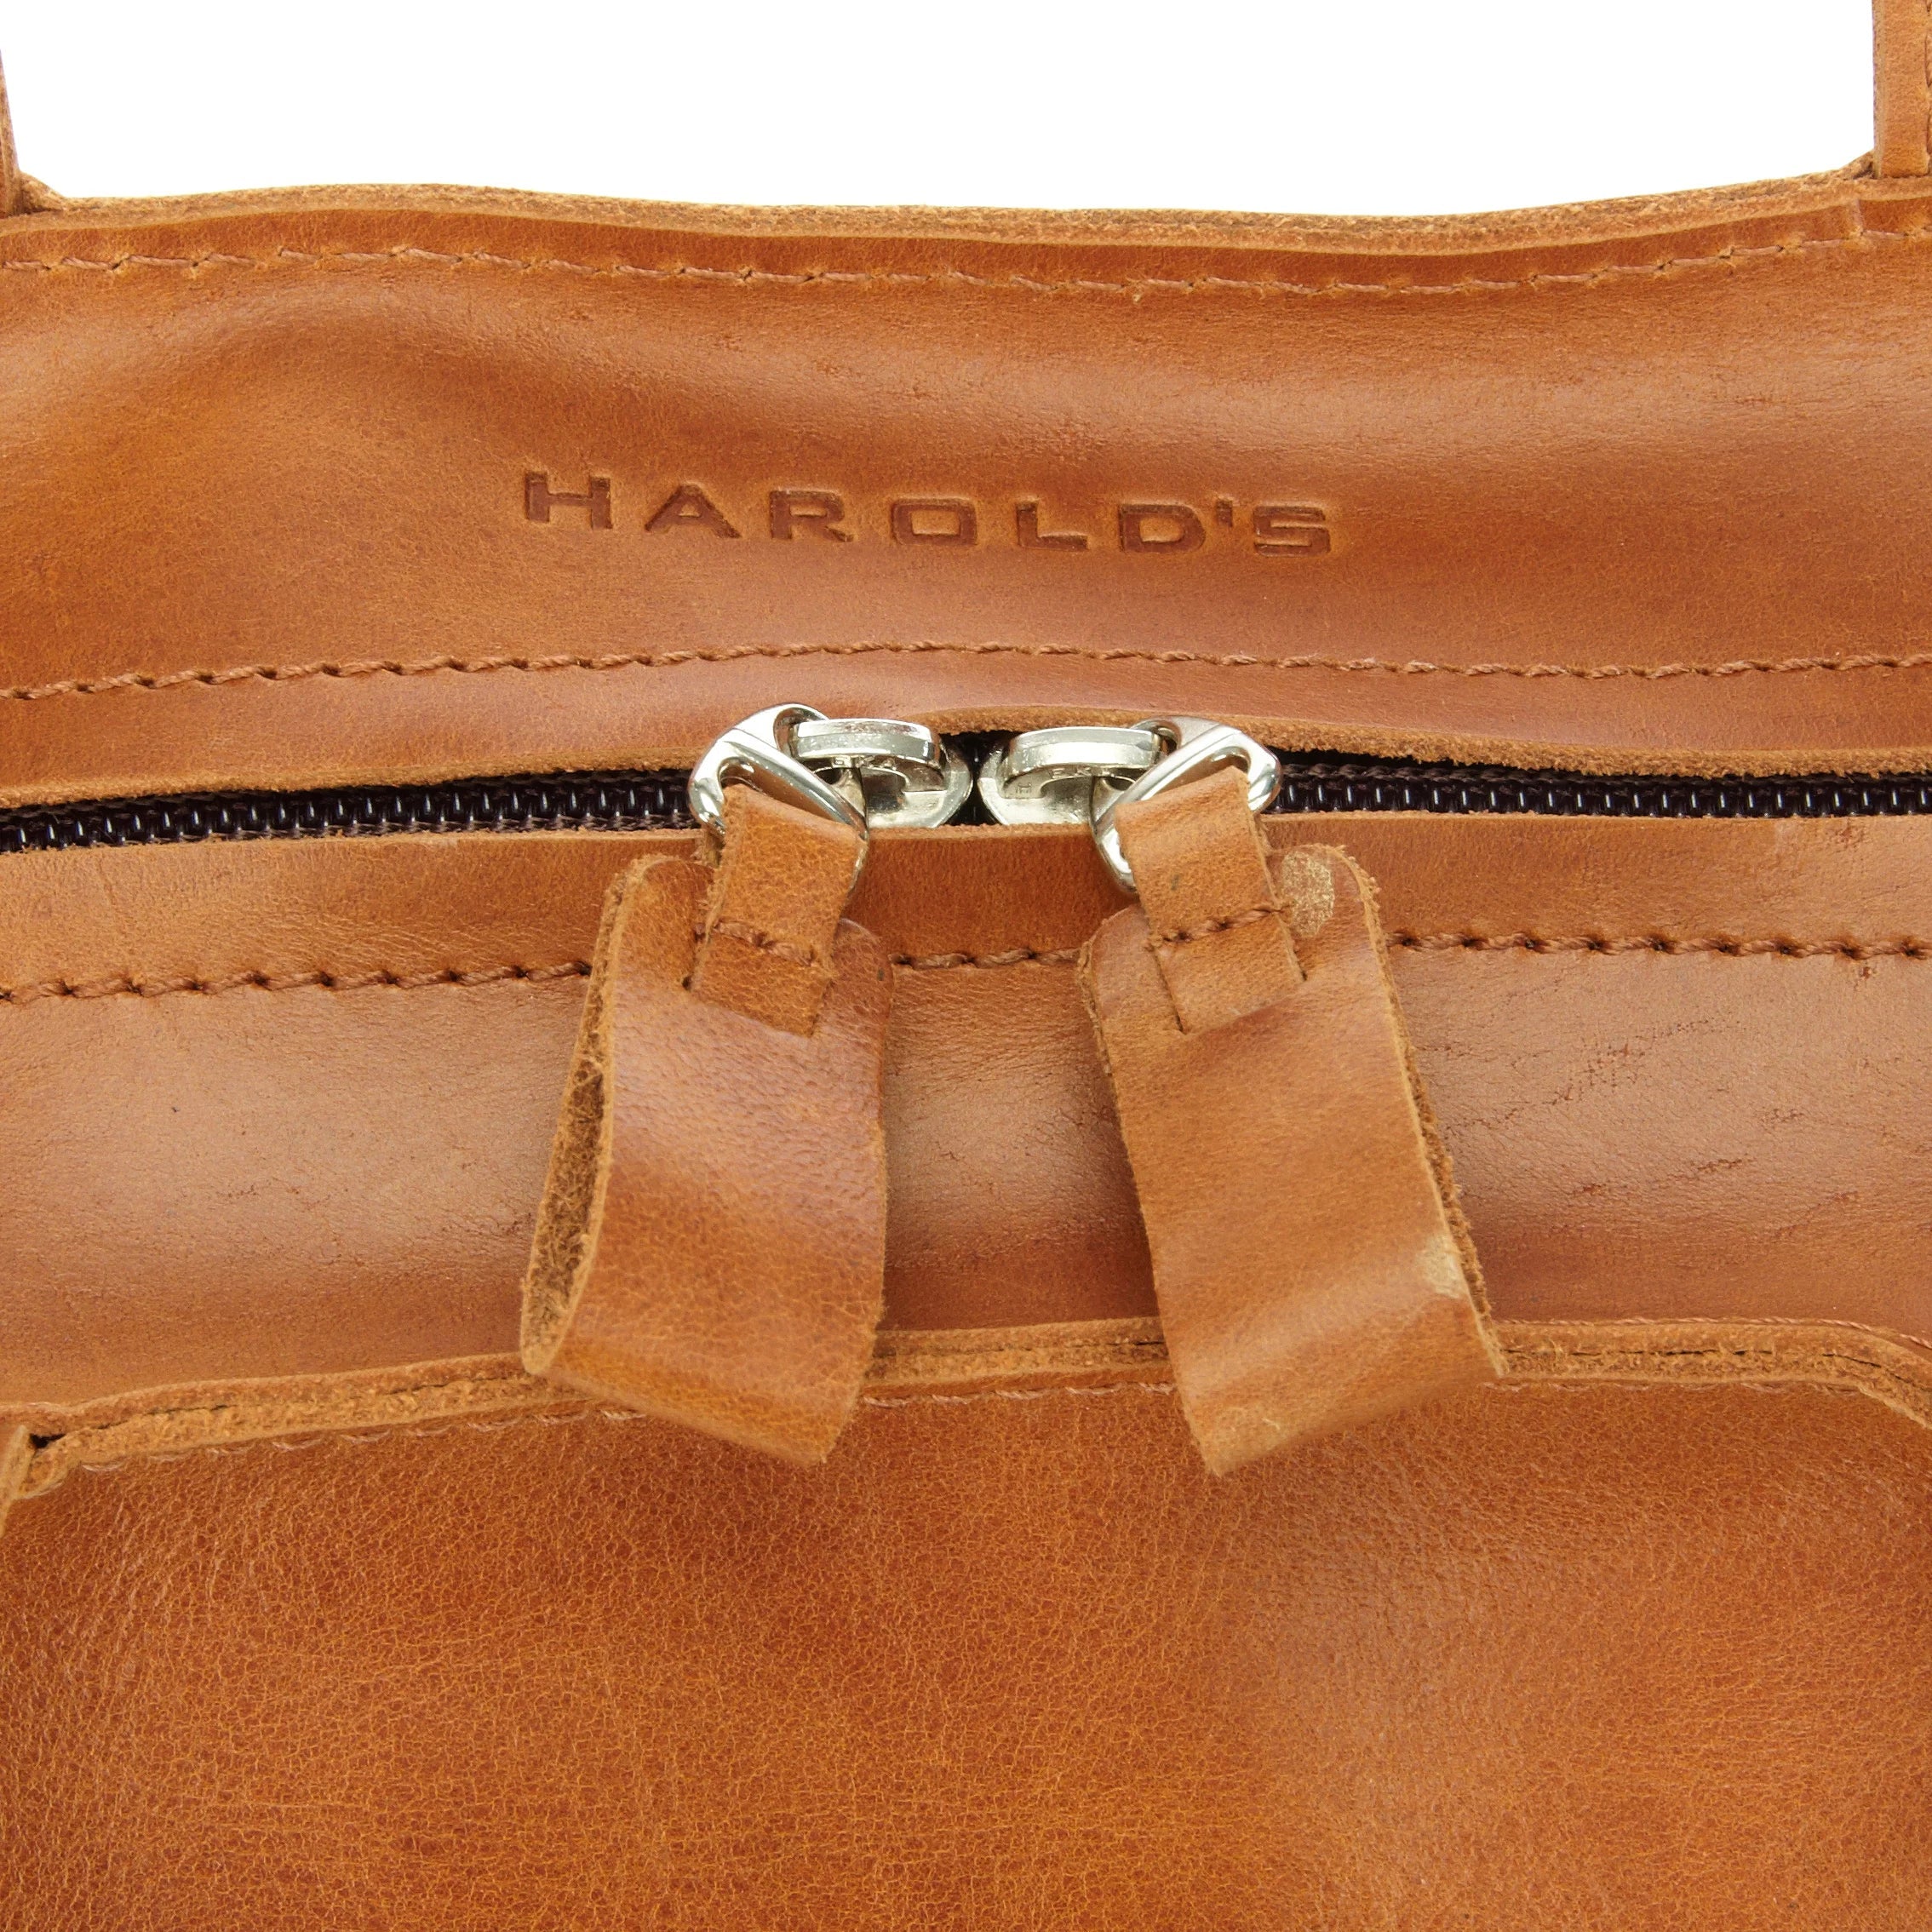 Harolds Landscape Totebag sac bandoulière 38 cm - marron